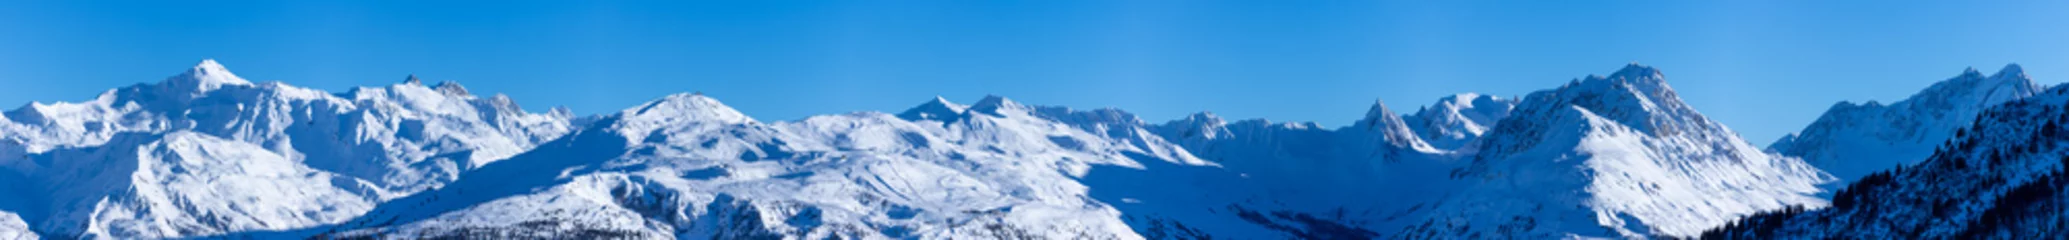 Verduisterende rolgordijnen zonder boren Alpen vue ultra panoramique sur une chaîne de montagnes enneigées des alpes